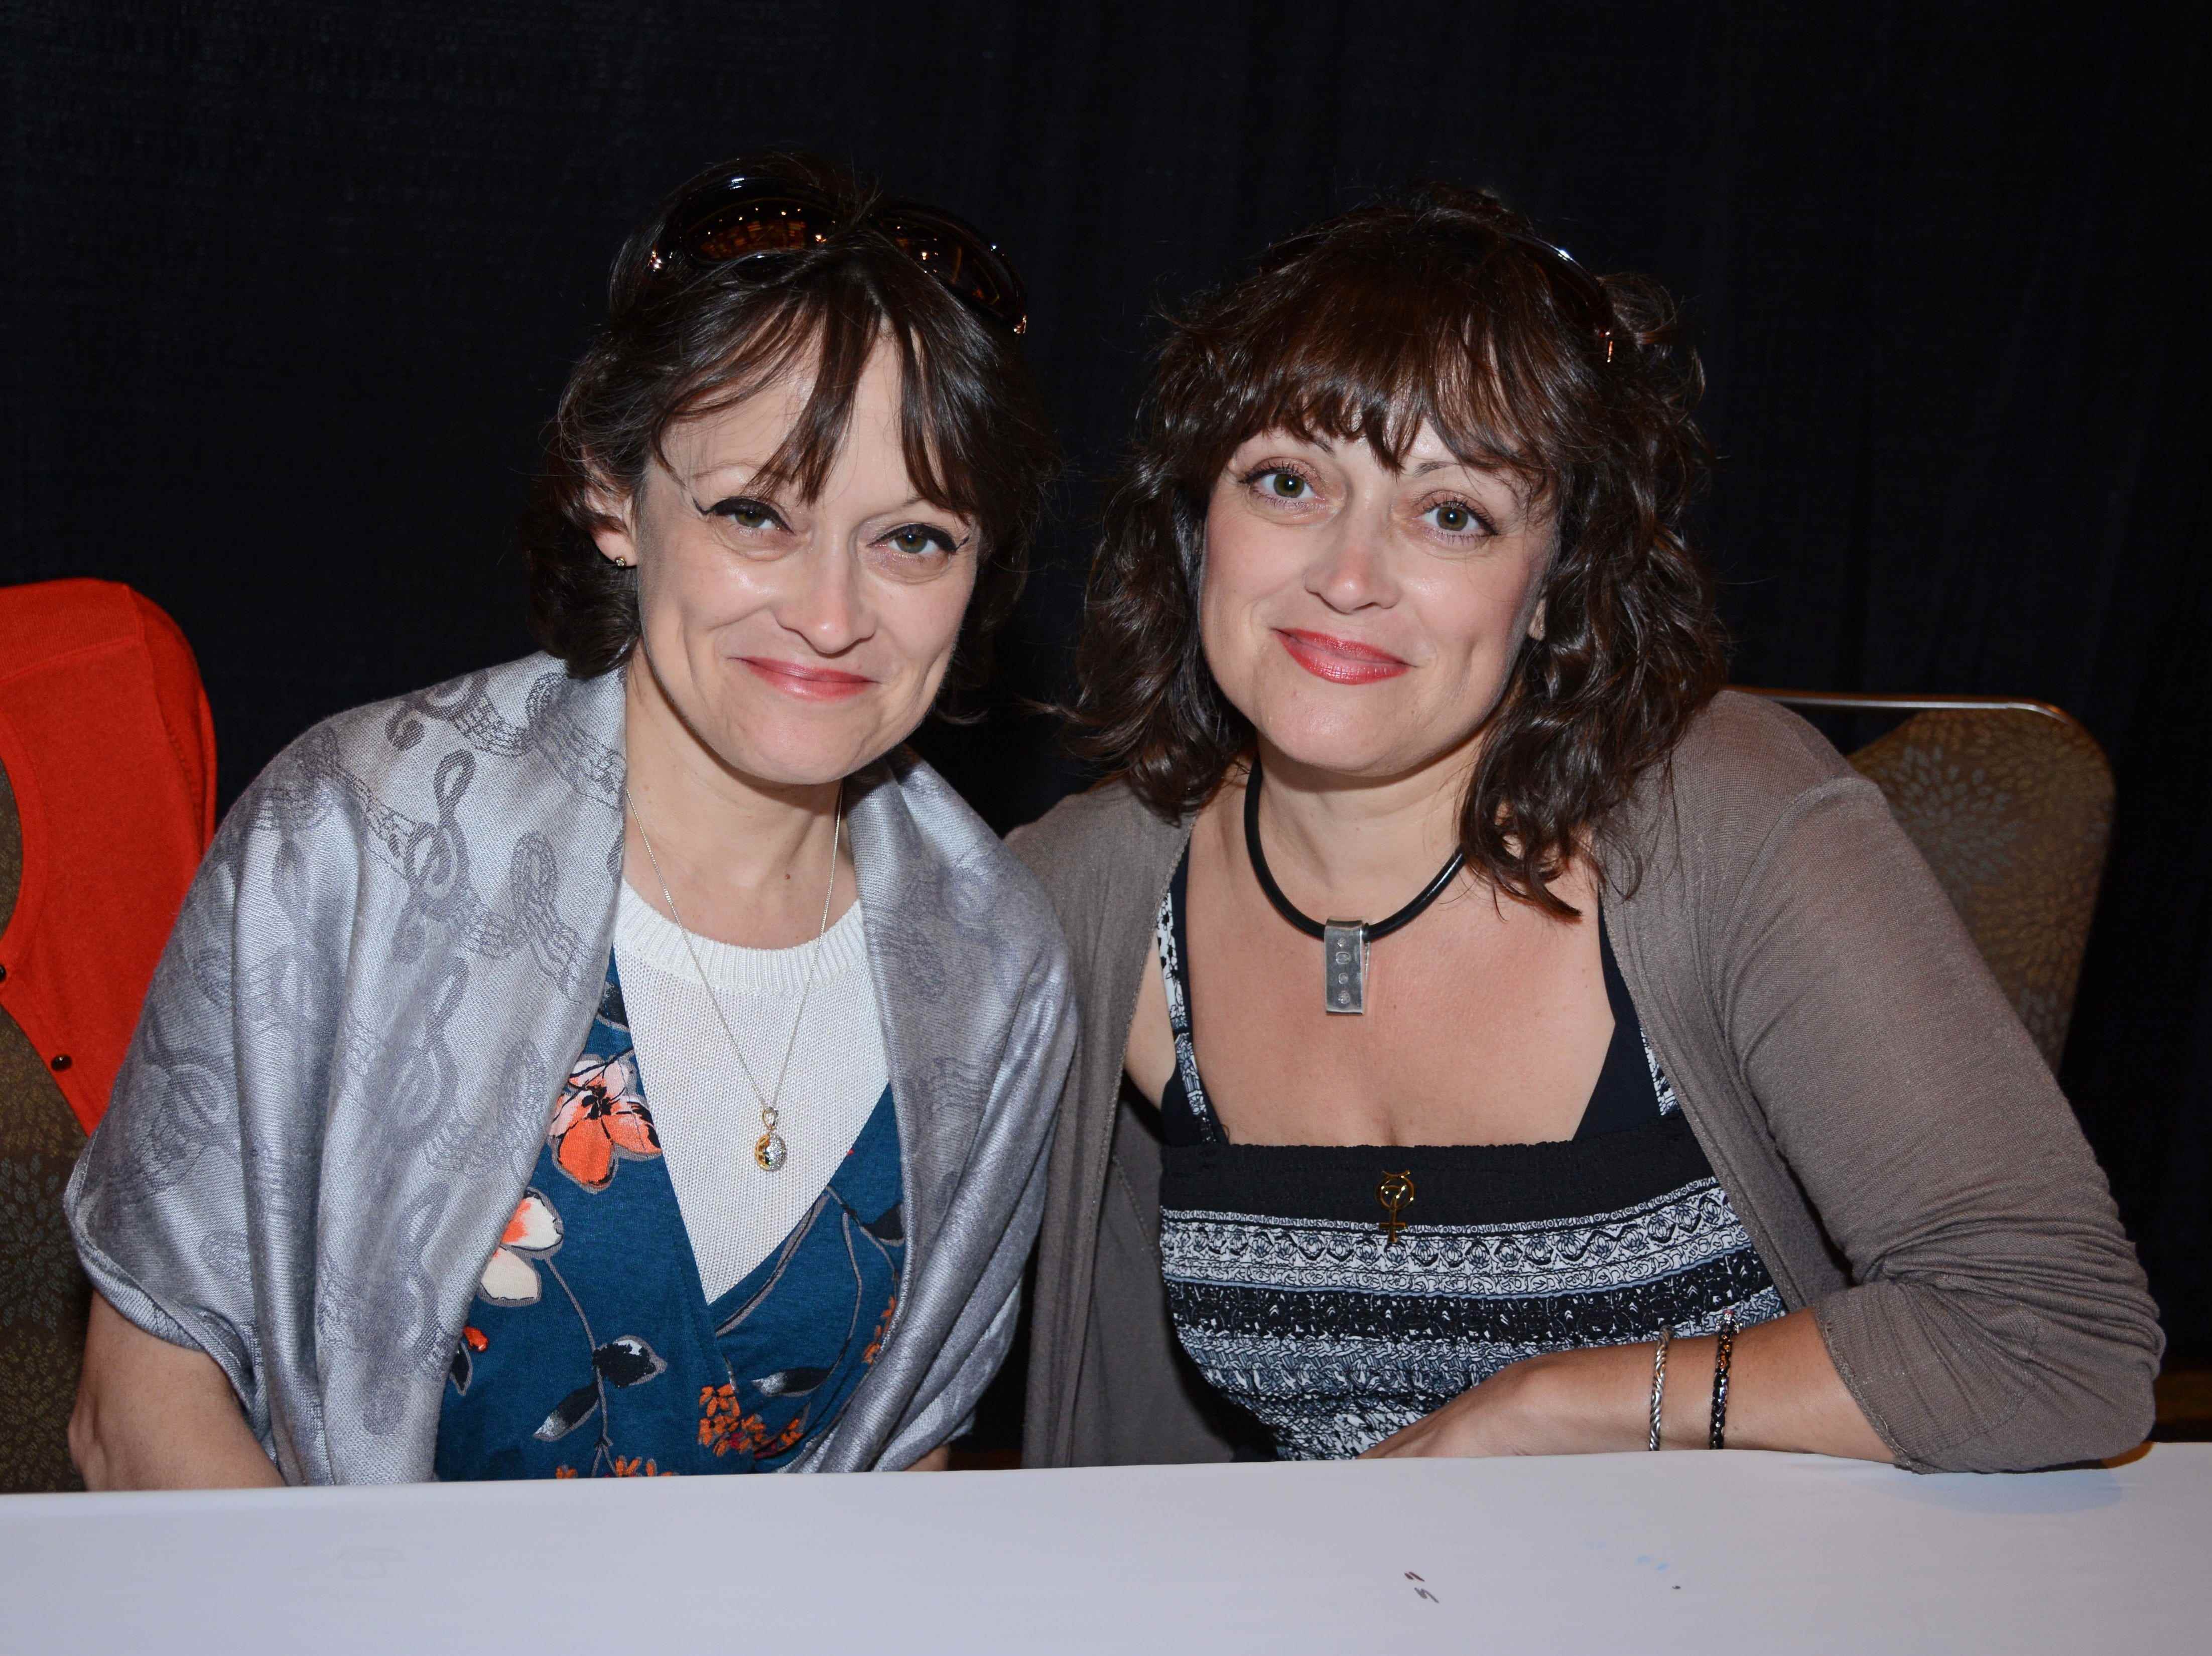 Lisa und Louise Burns, die Zwillinge aus „The Shining“, bei einem Fan-Event